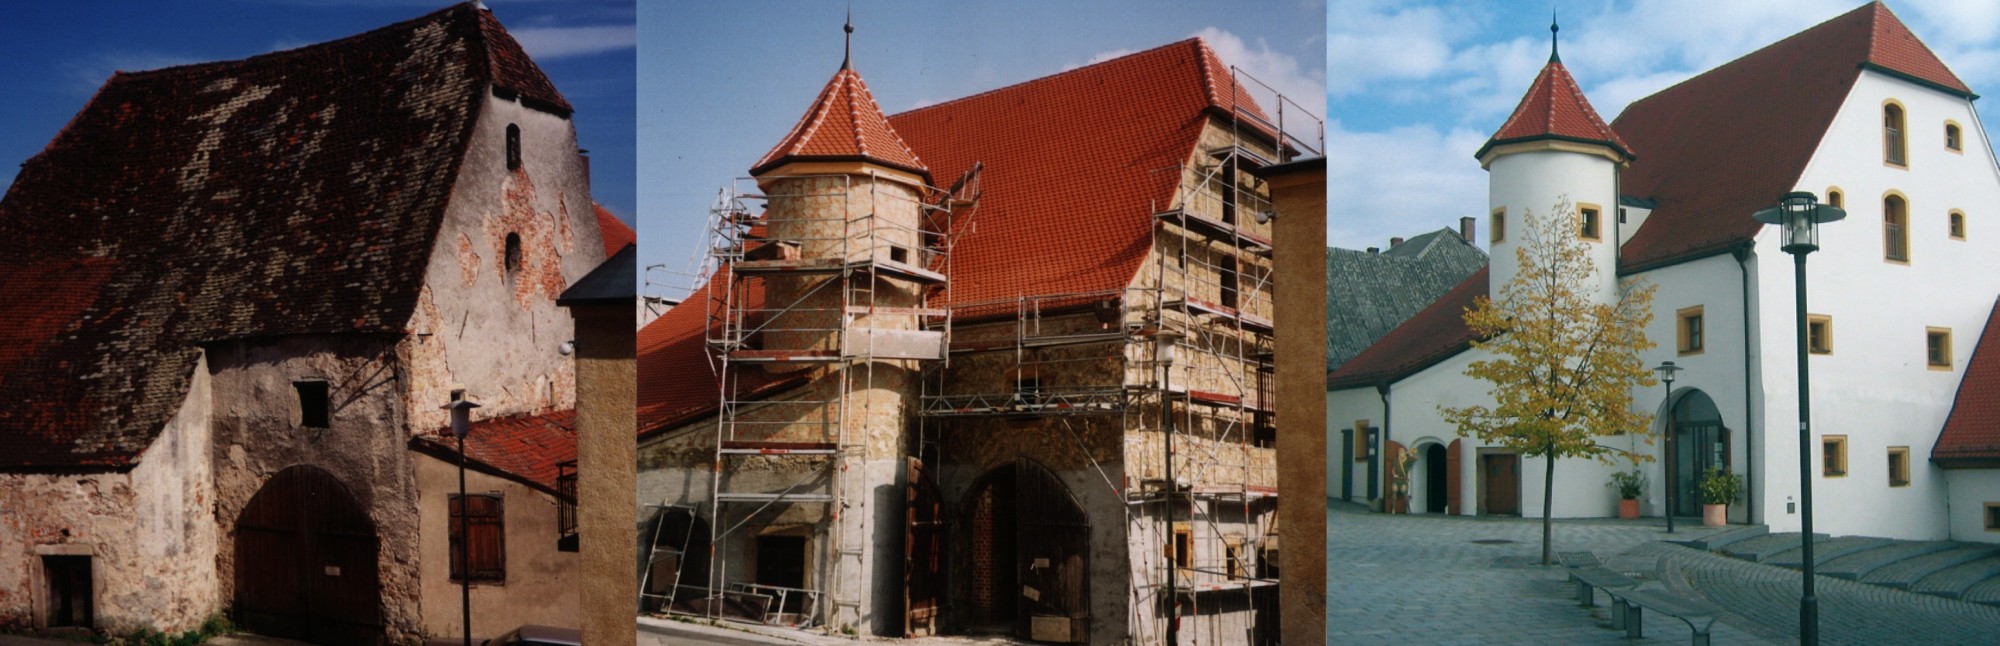 Das erste Foto zeigt den ehemaligen Getreidespeicher vor der Sanierung 1999 als baufälliges Gemäuer. Das zweite Foto zeigt den Zehentstadel eingerüstet während der Sanierung. Das dritte Foto zeigt den bis 2003 sanierten Zehentstadel als Stadtmuseum.